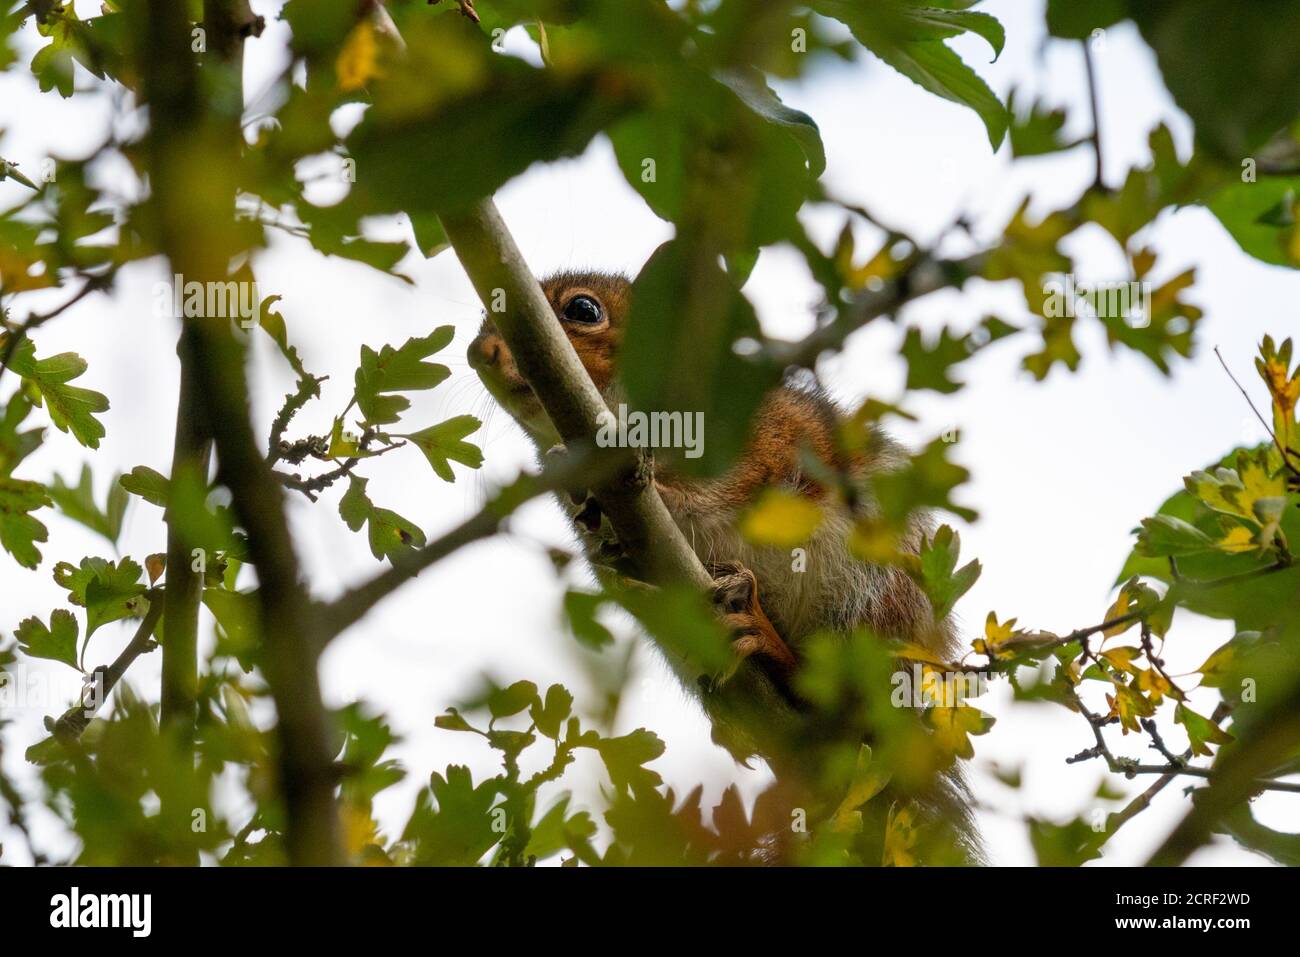 Grey squirrel hiding in tree Stock Photo